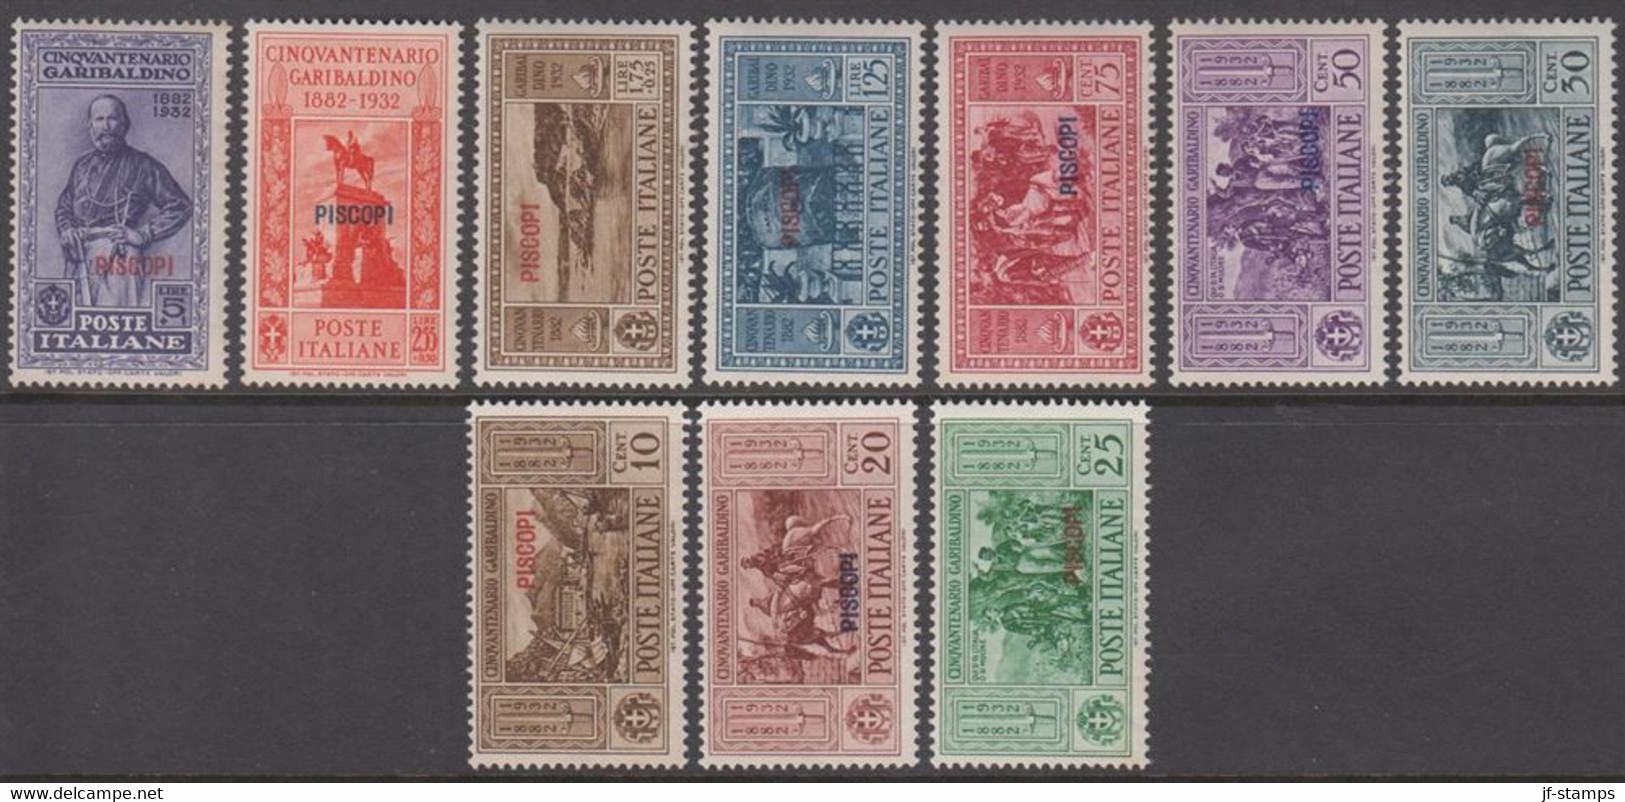 1932. Garibaldi. Complete Set With 10 Stamps. Overprinted PISCOPI.  (Michel 88-97 IX) - JF141037 - Egeo